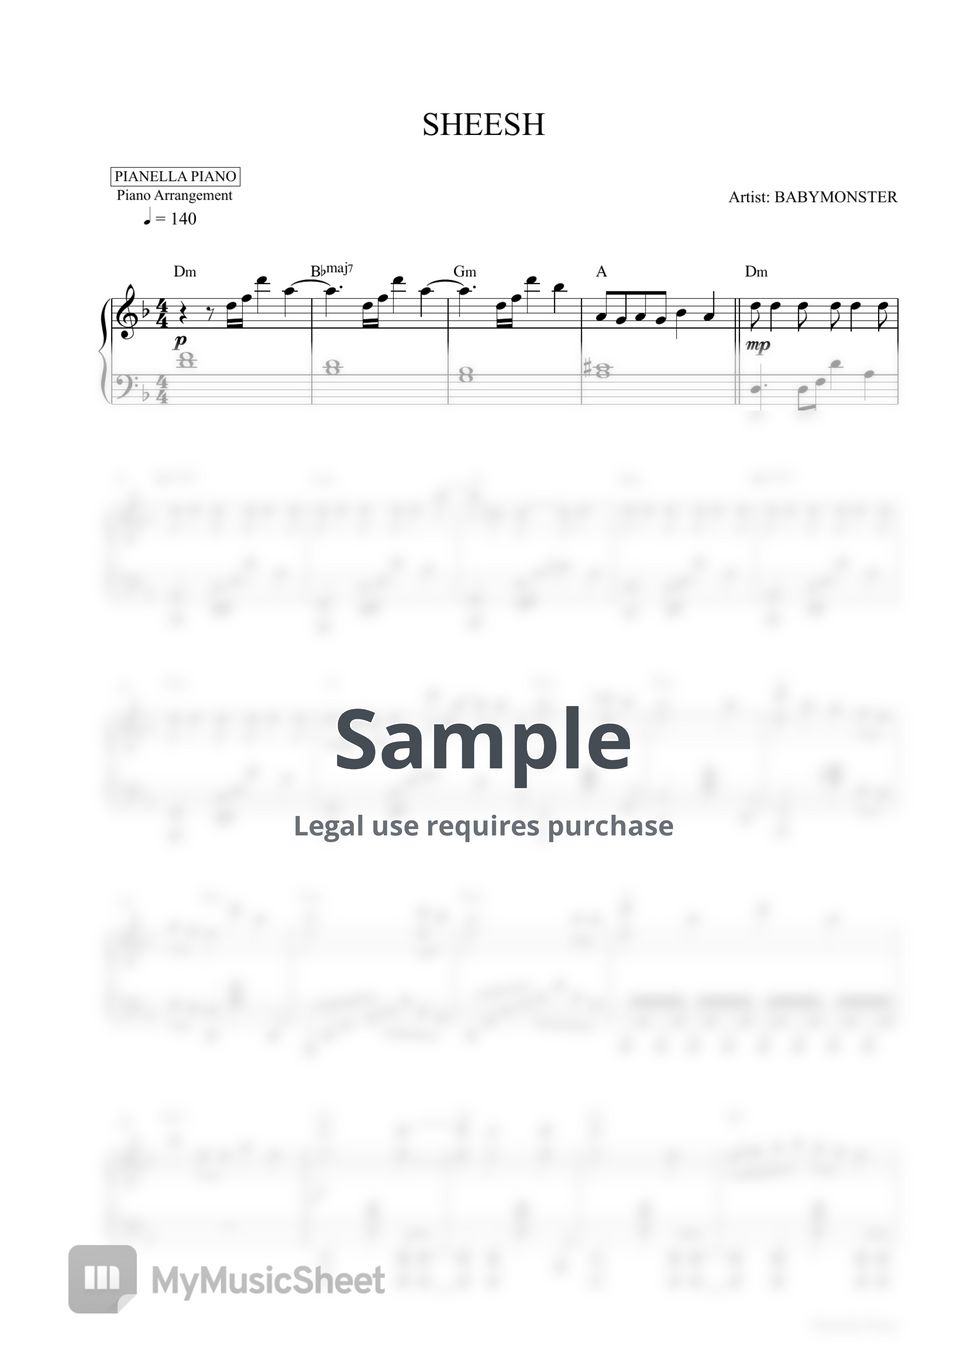 BABYMONSTER - SHEESH (Piano Sheet) by Pianella Piano